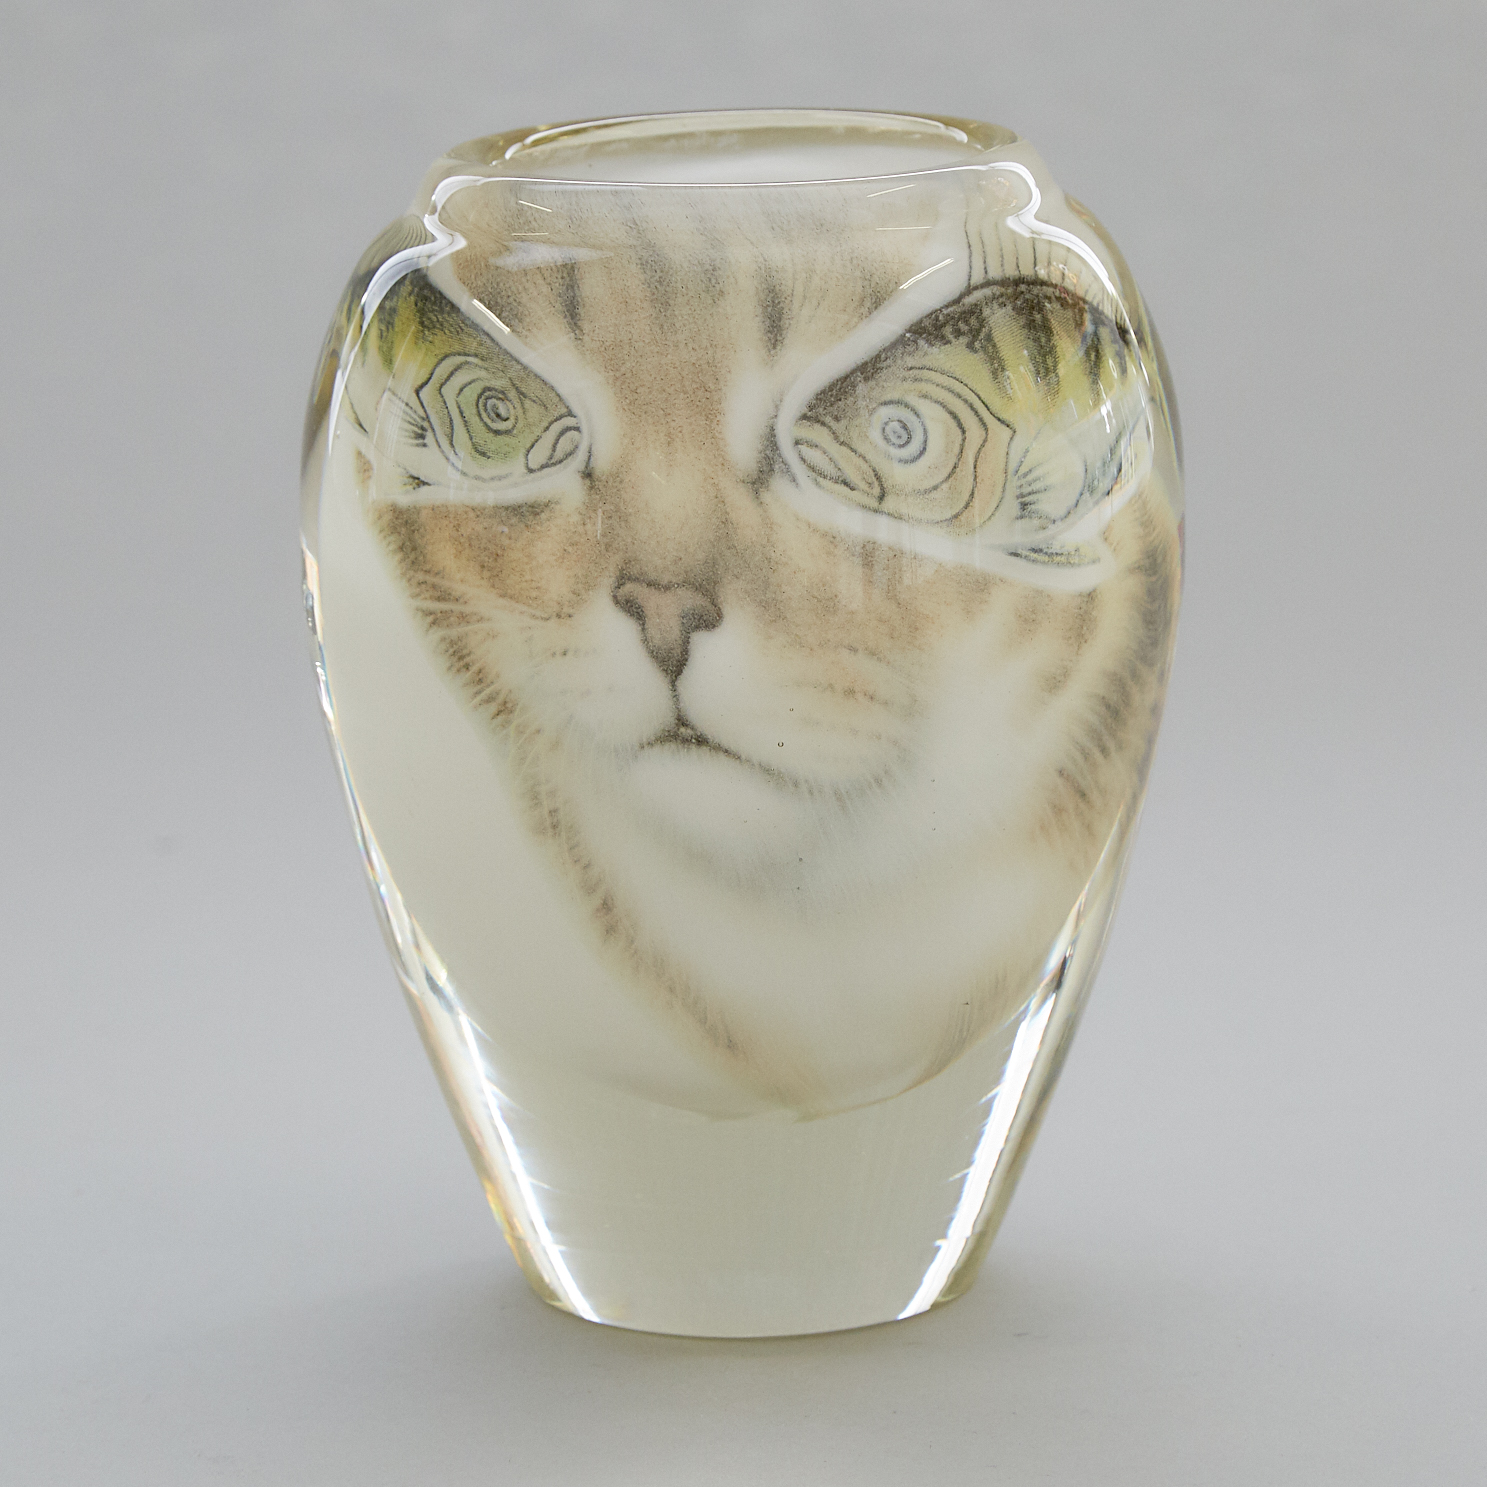 Toan Klein (American/Canadian, b.1949), Catfish Vase, 1983